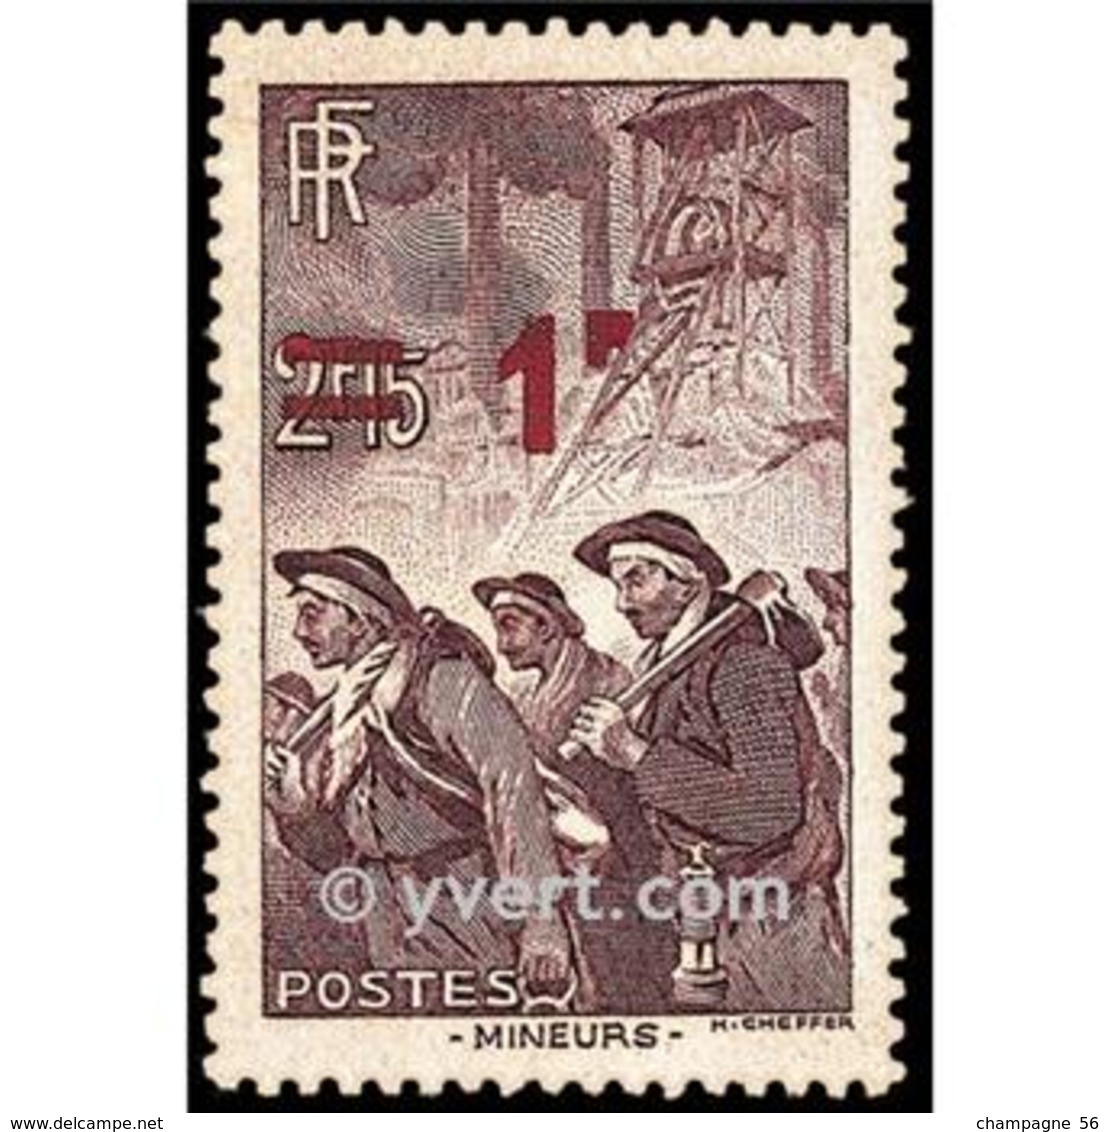 VARIÉTÉS FR 1940 / 1941 N° 489 MINEURS 1 F.ROUGE  SUR 2 F. 15   OBLITÉRÉ  DOS CHARNIÈRE YVERT TELLIER 0.50 € - Used Stamps